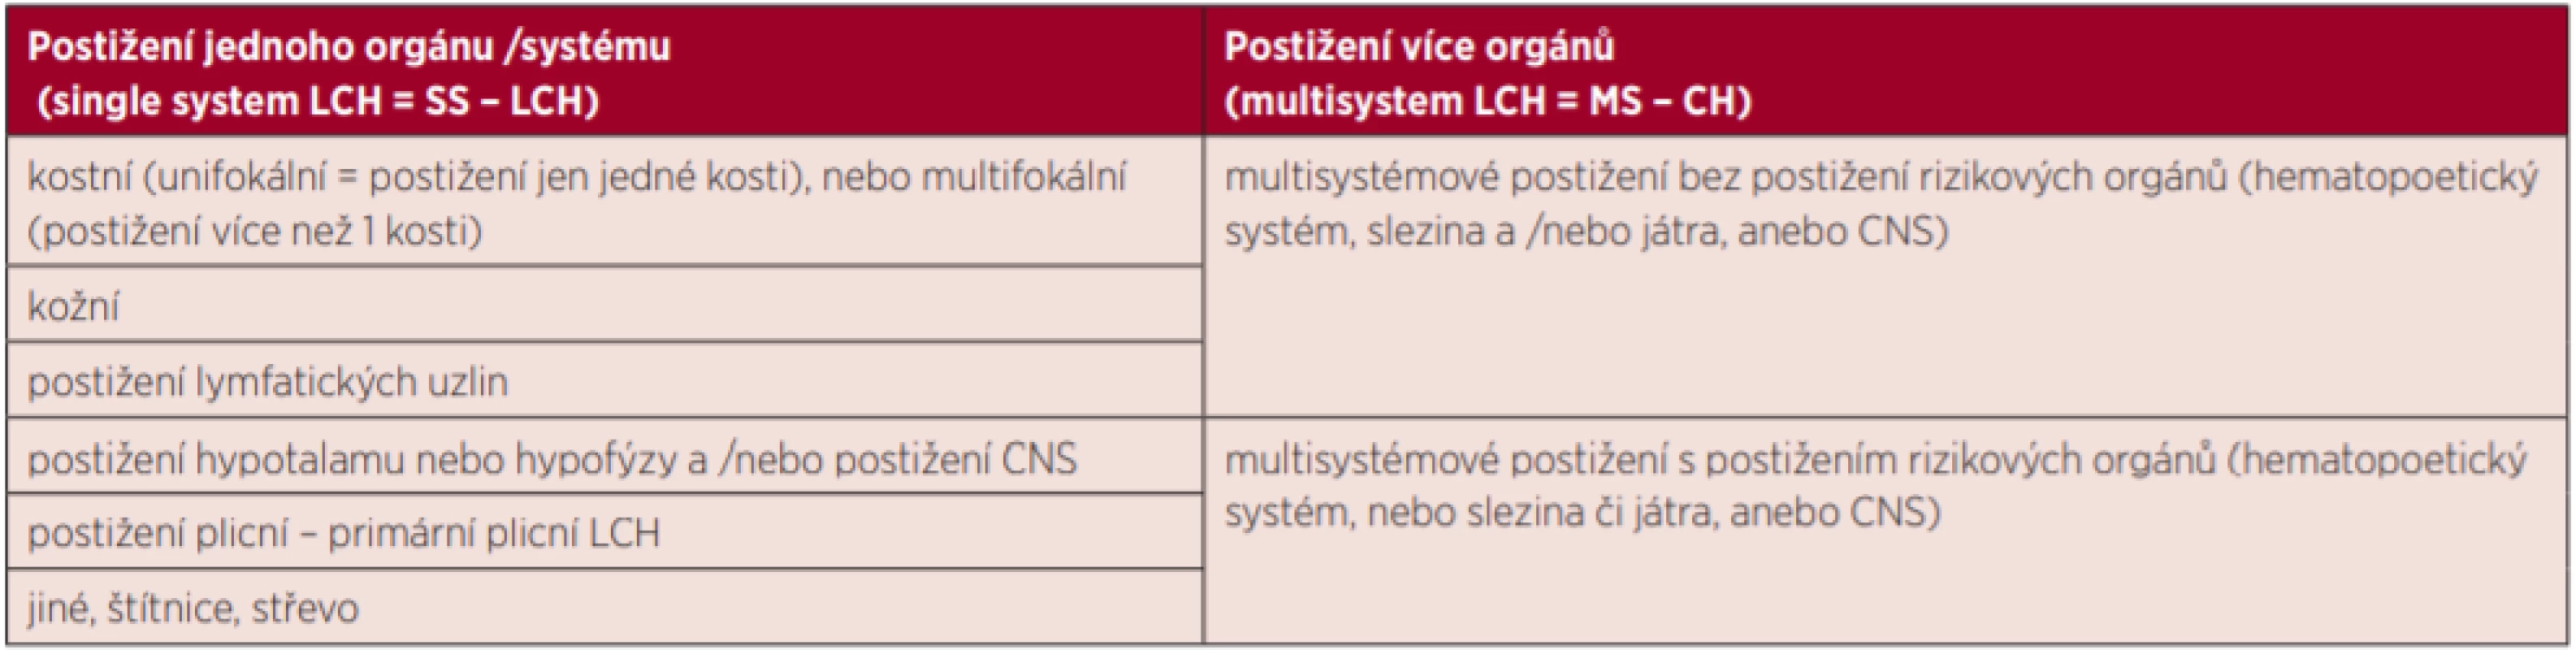 Stratifikace pacientů s LCH [3]